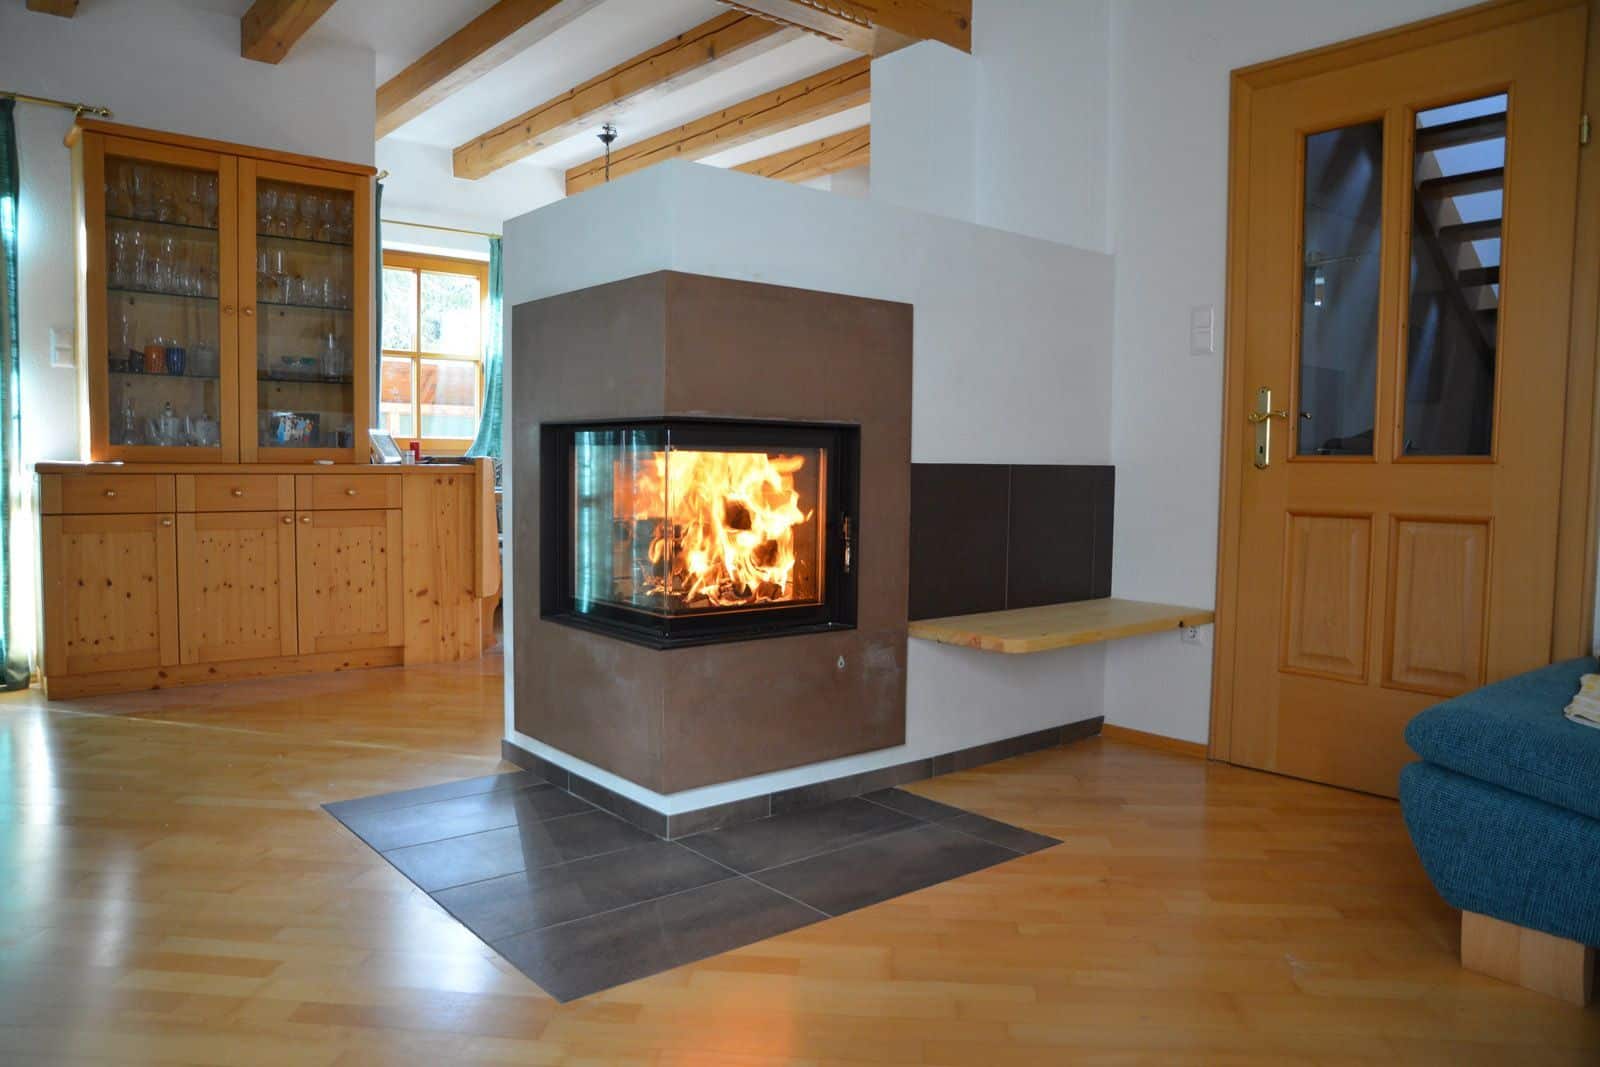 Ofenbau Grabner - Ofen im Wohnzimmer brennt